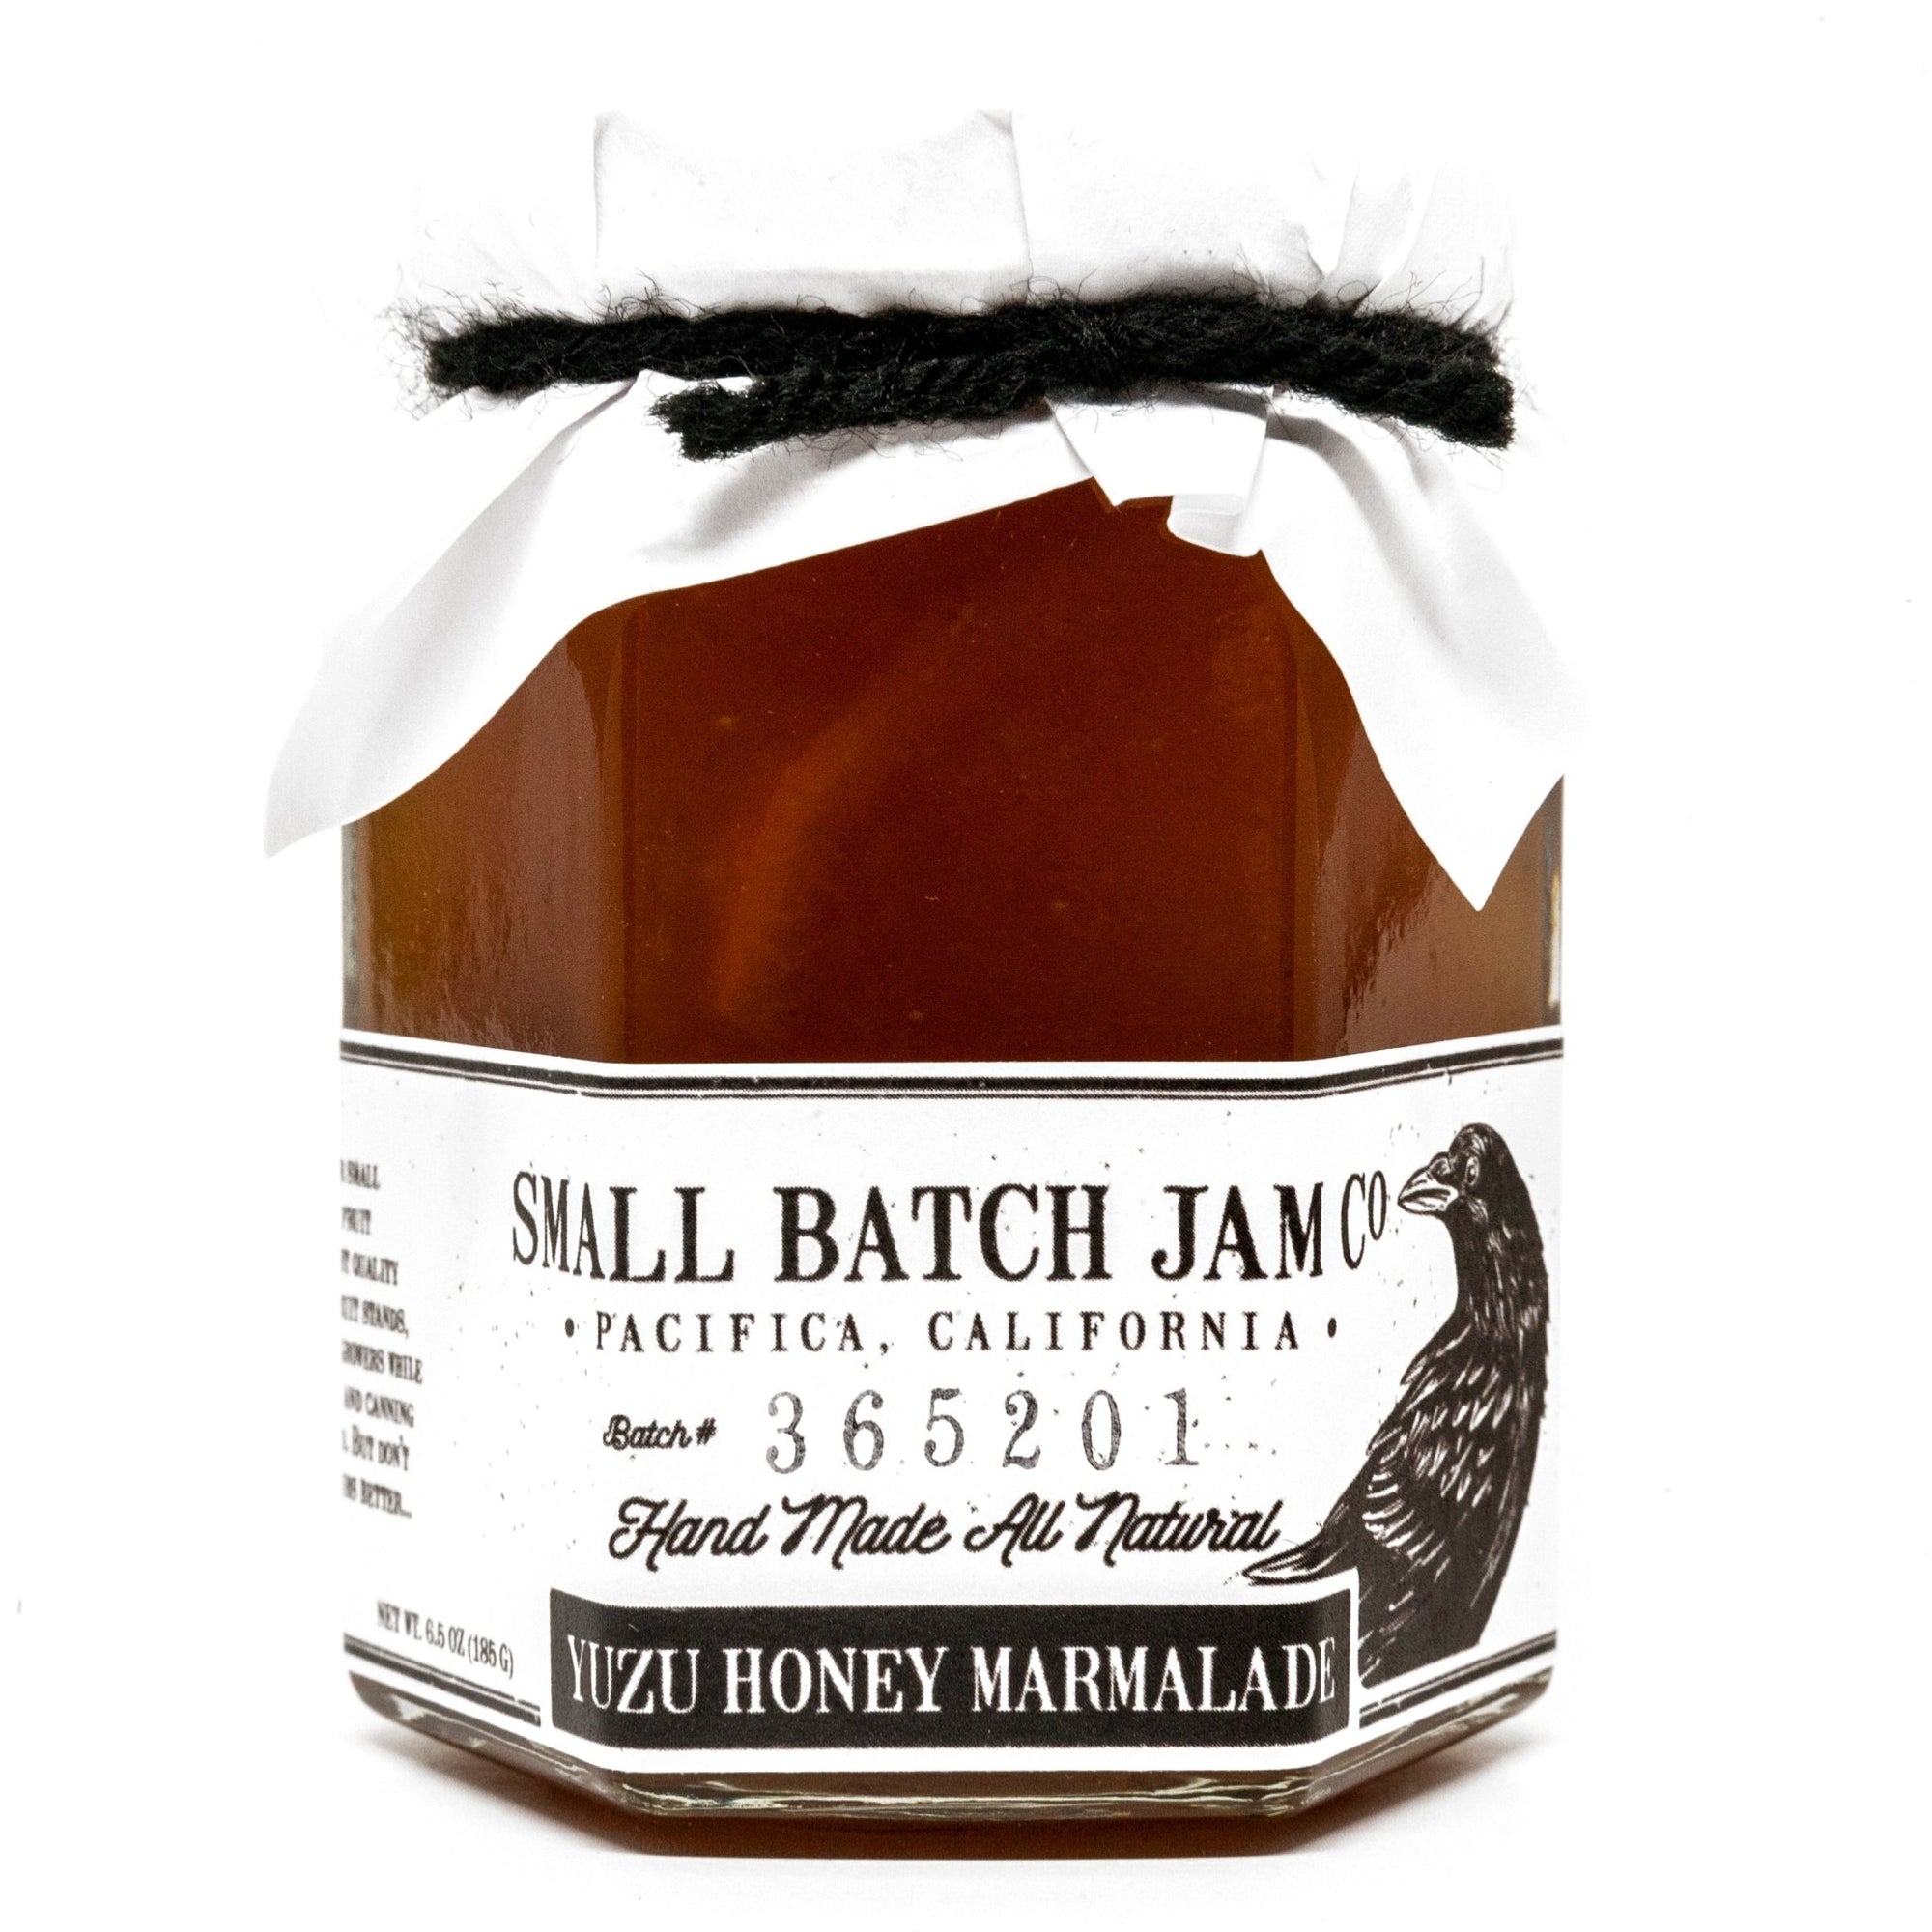 Yuzu Honey Marmalade - Small Batch Jam Co